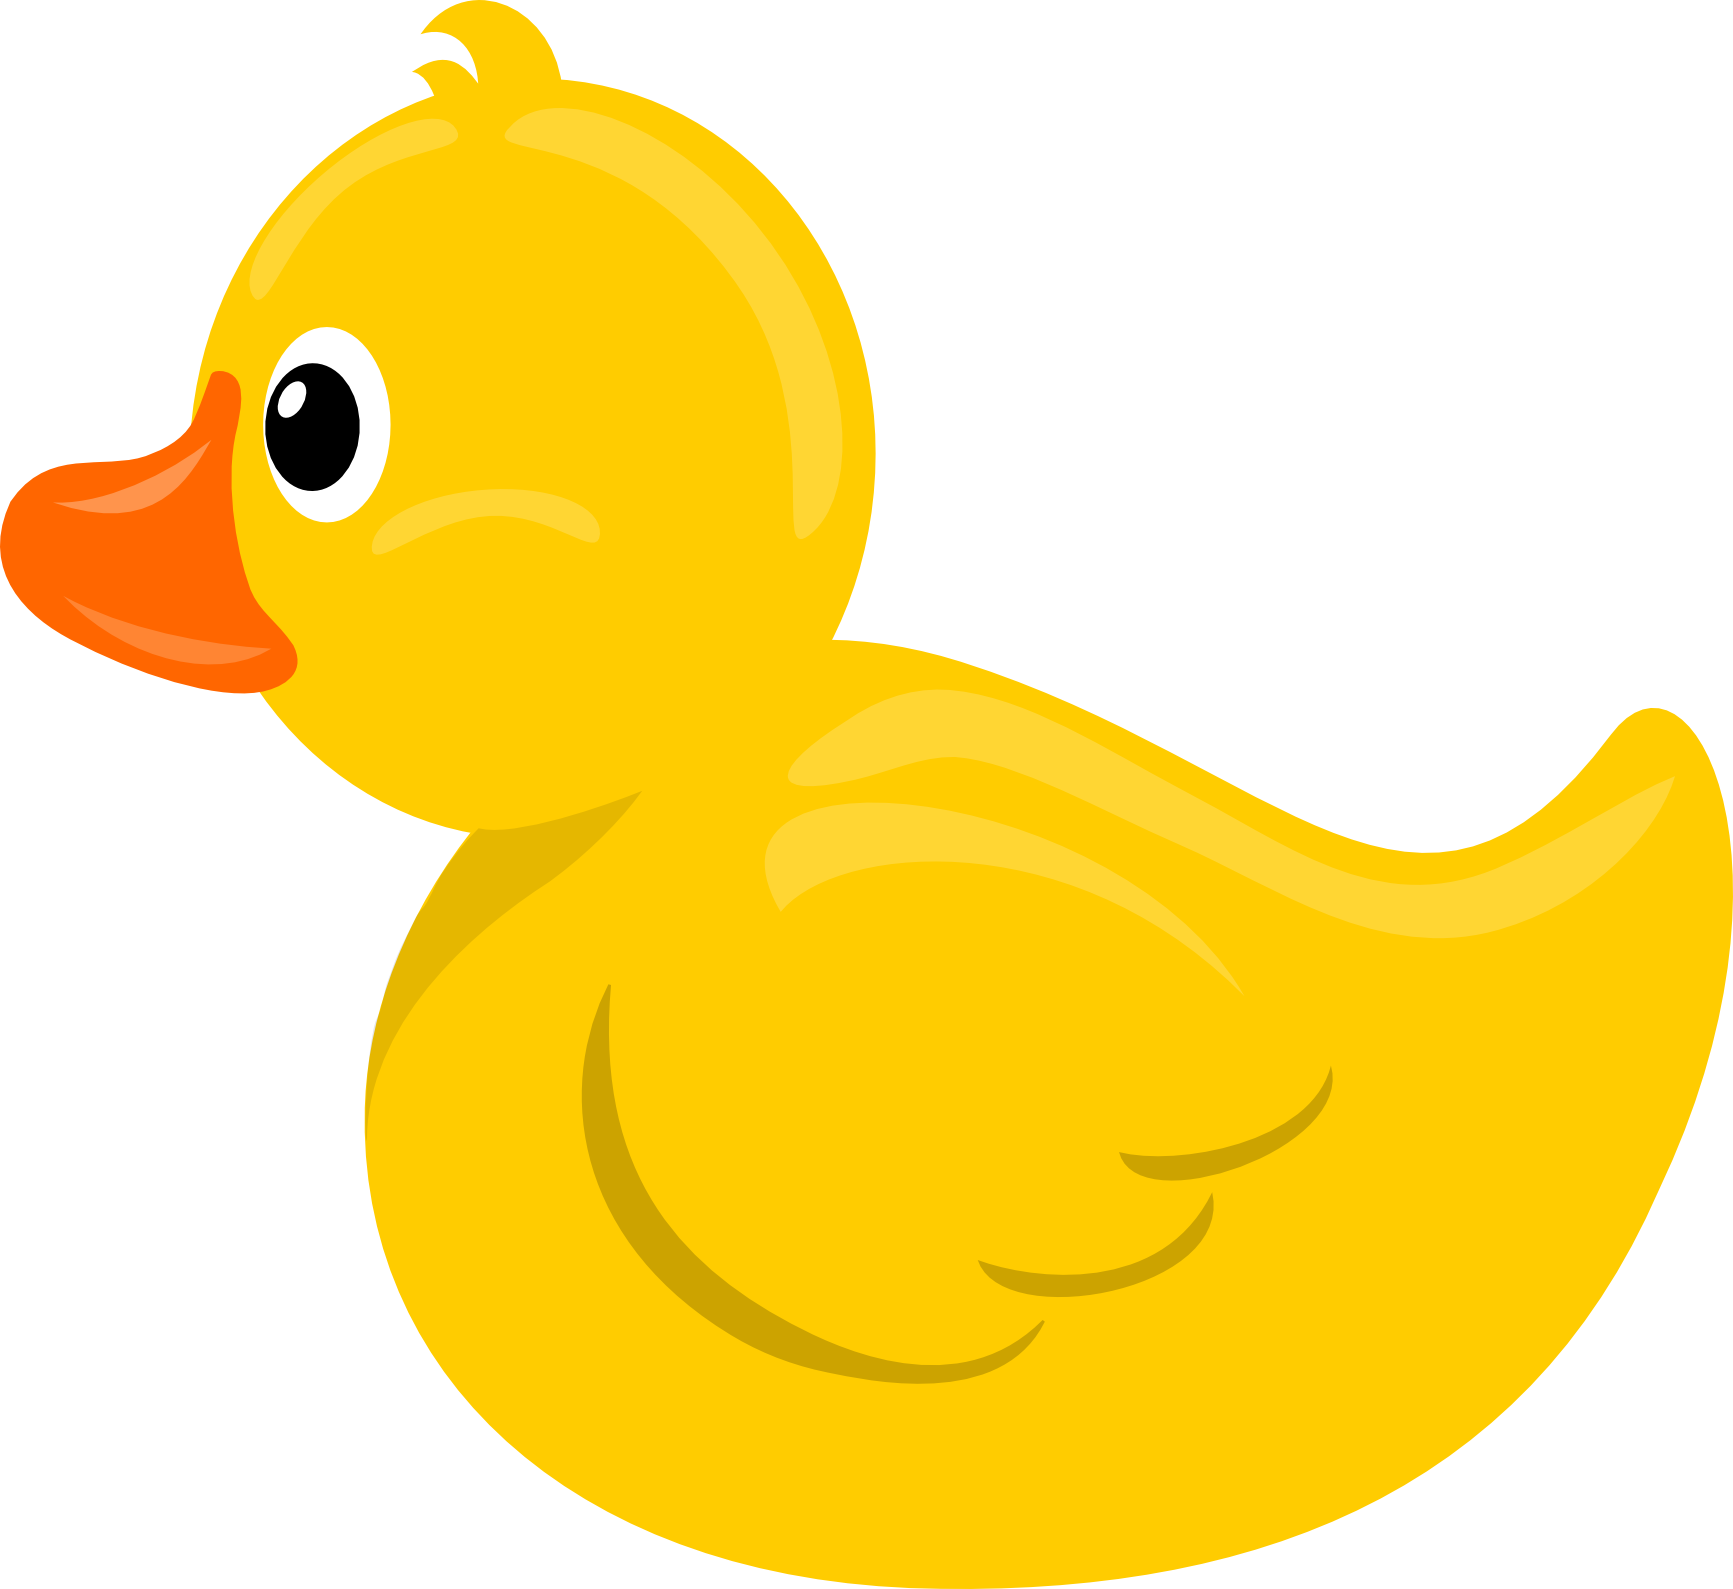 duck orange beak. Size: 39 Kb